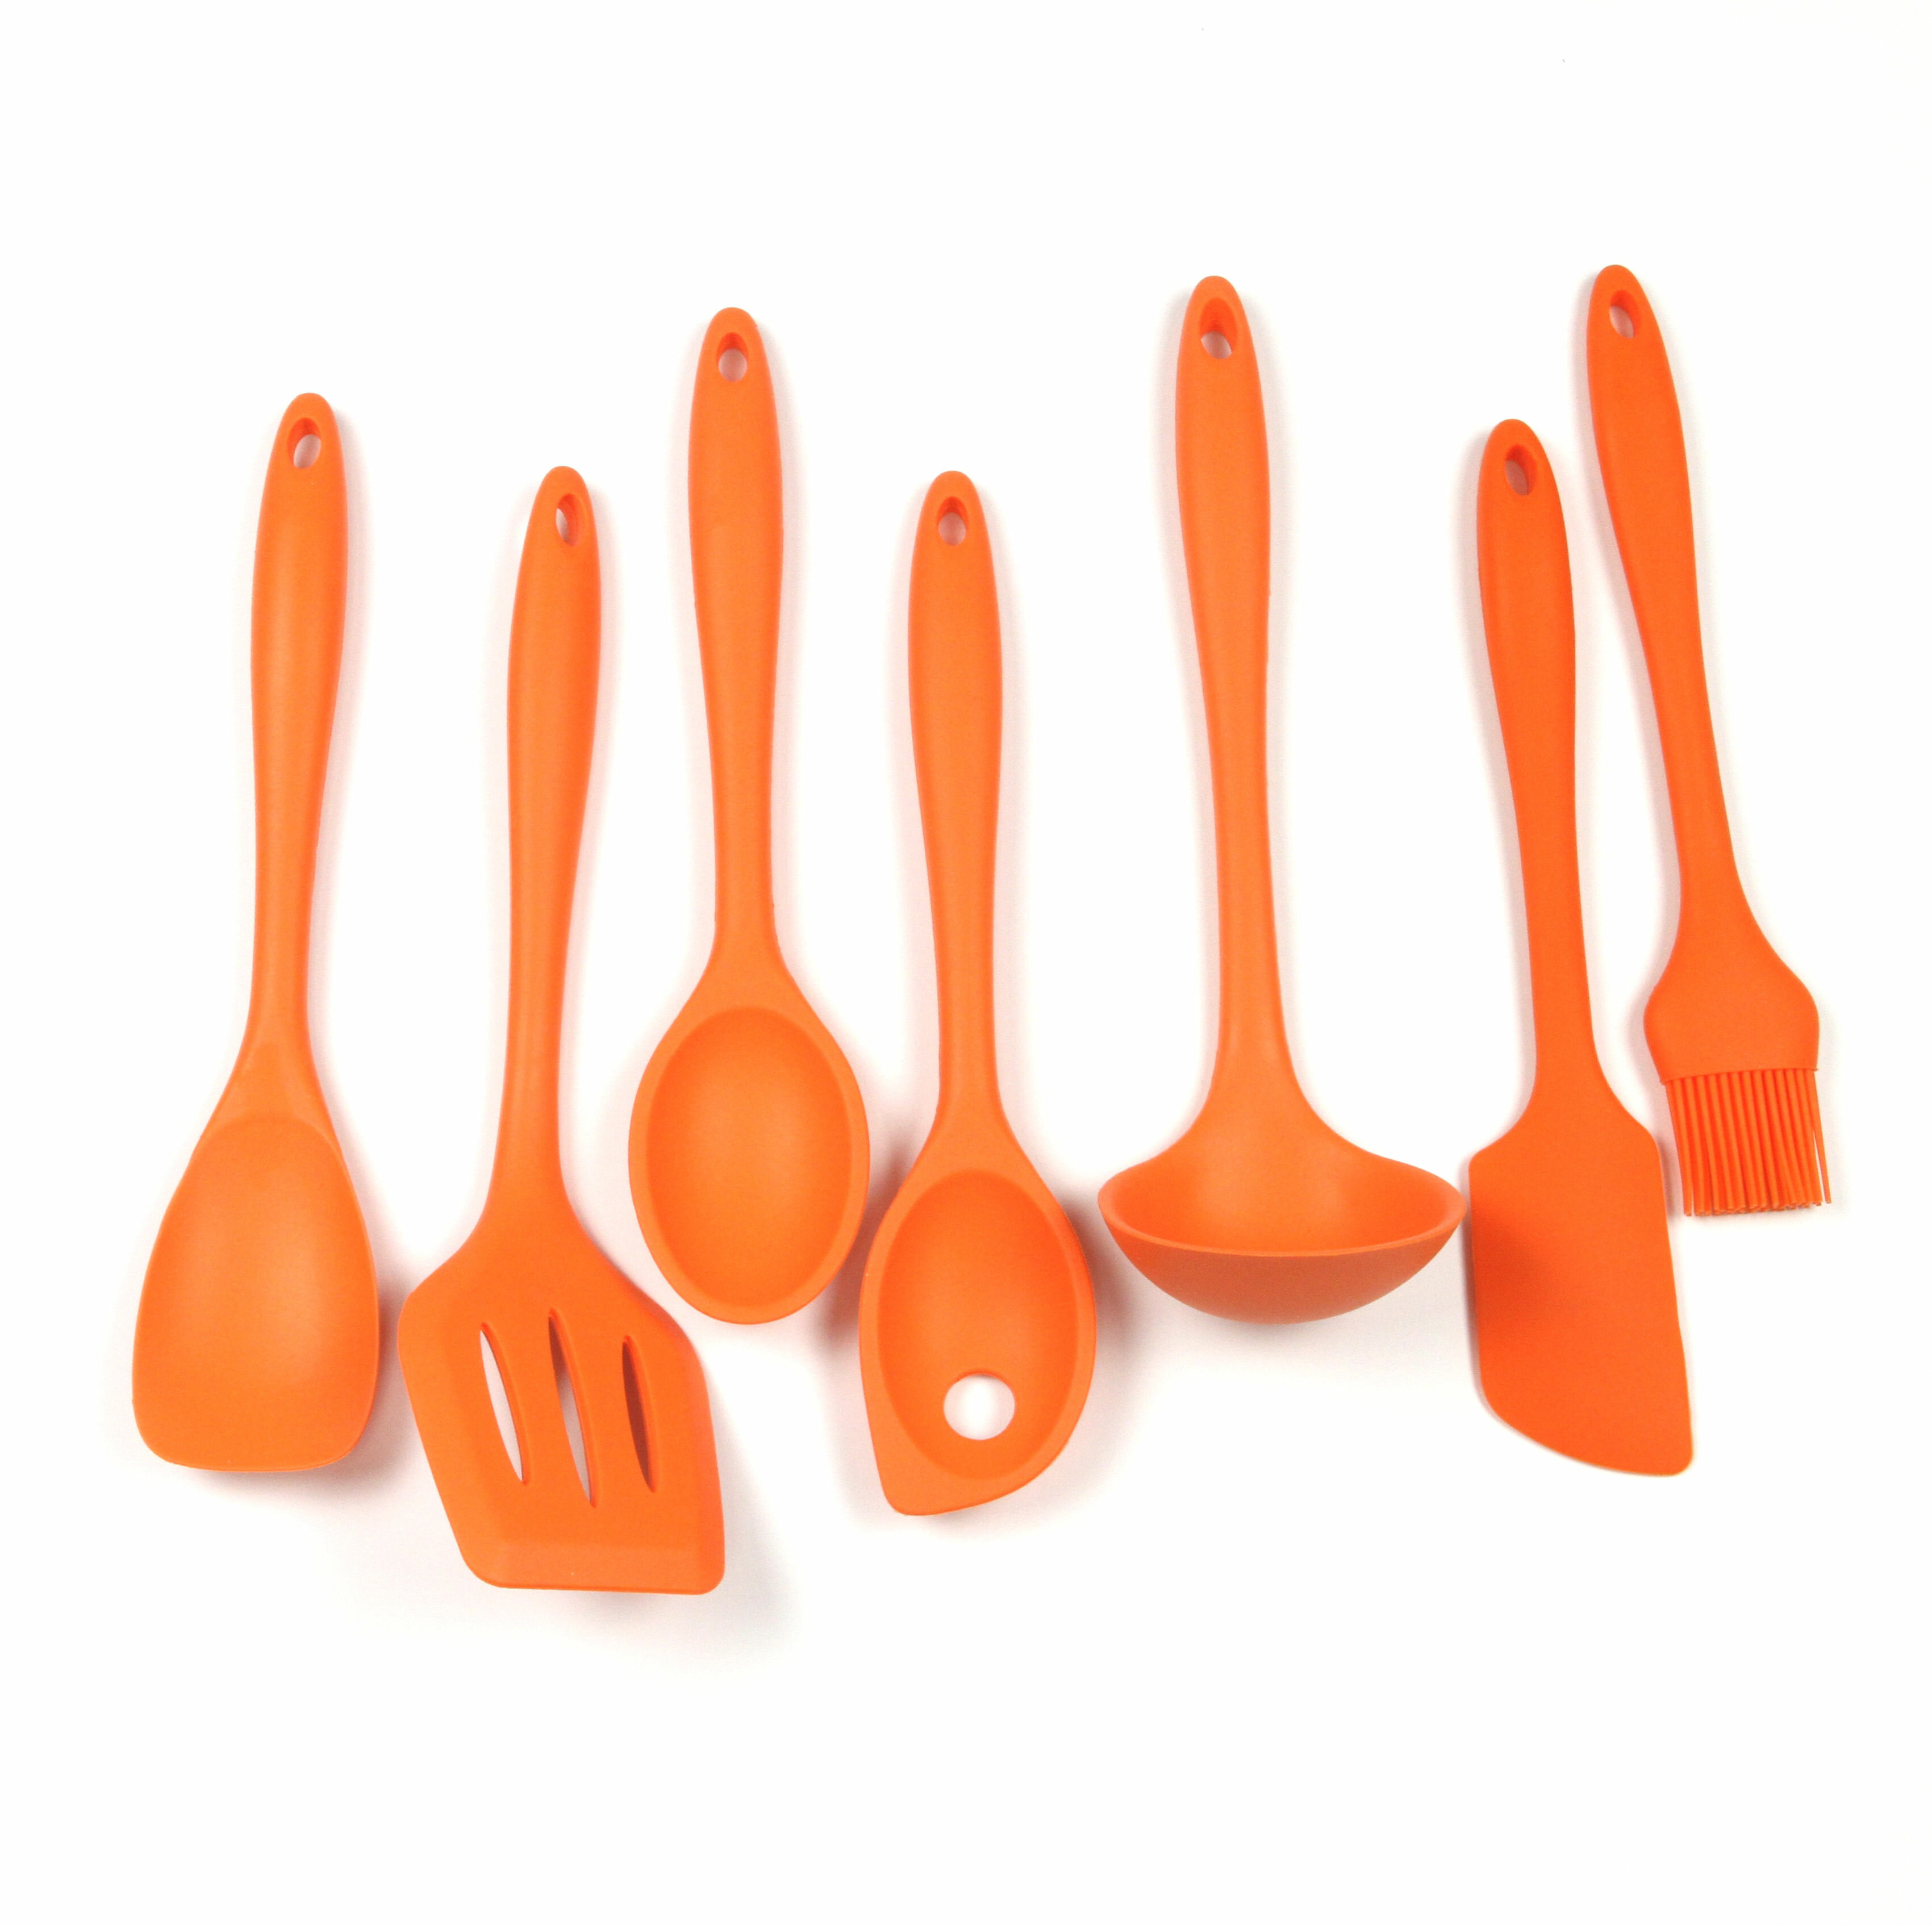 https://assets.wfcdn.com/im/96635587/compr-r85/8488/84889930/7-piece-silicone-assorted-kitchen-utensil-set.jpg